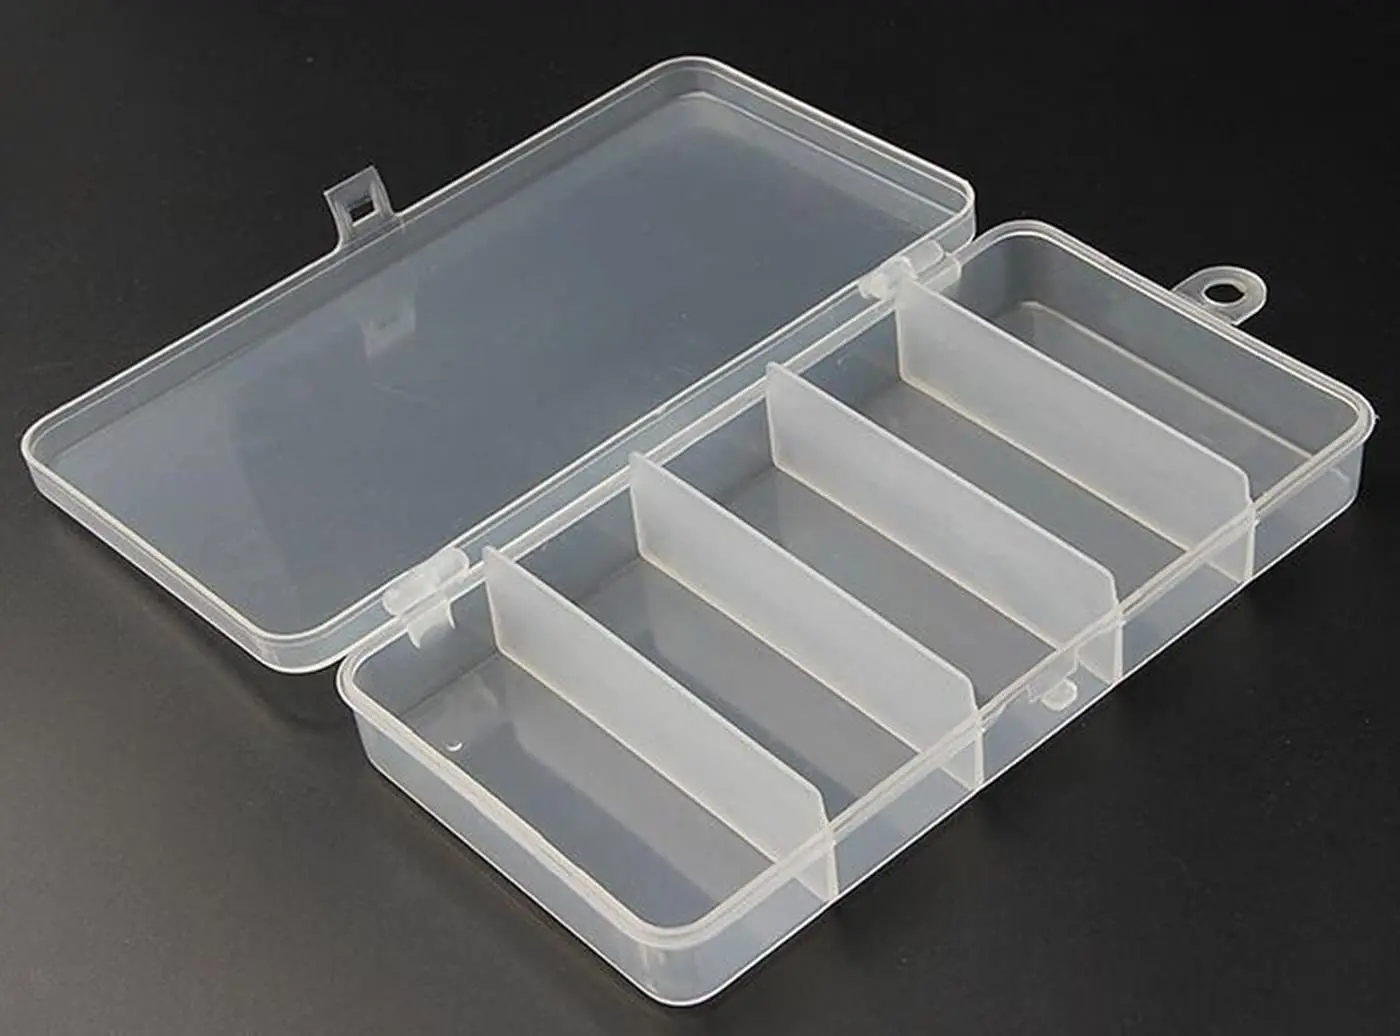 cajas de plastico pesca - Cuánto mide una tara de plástico